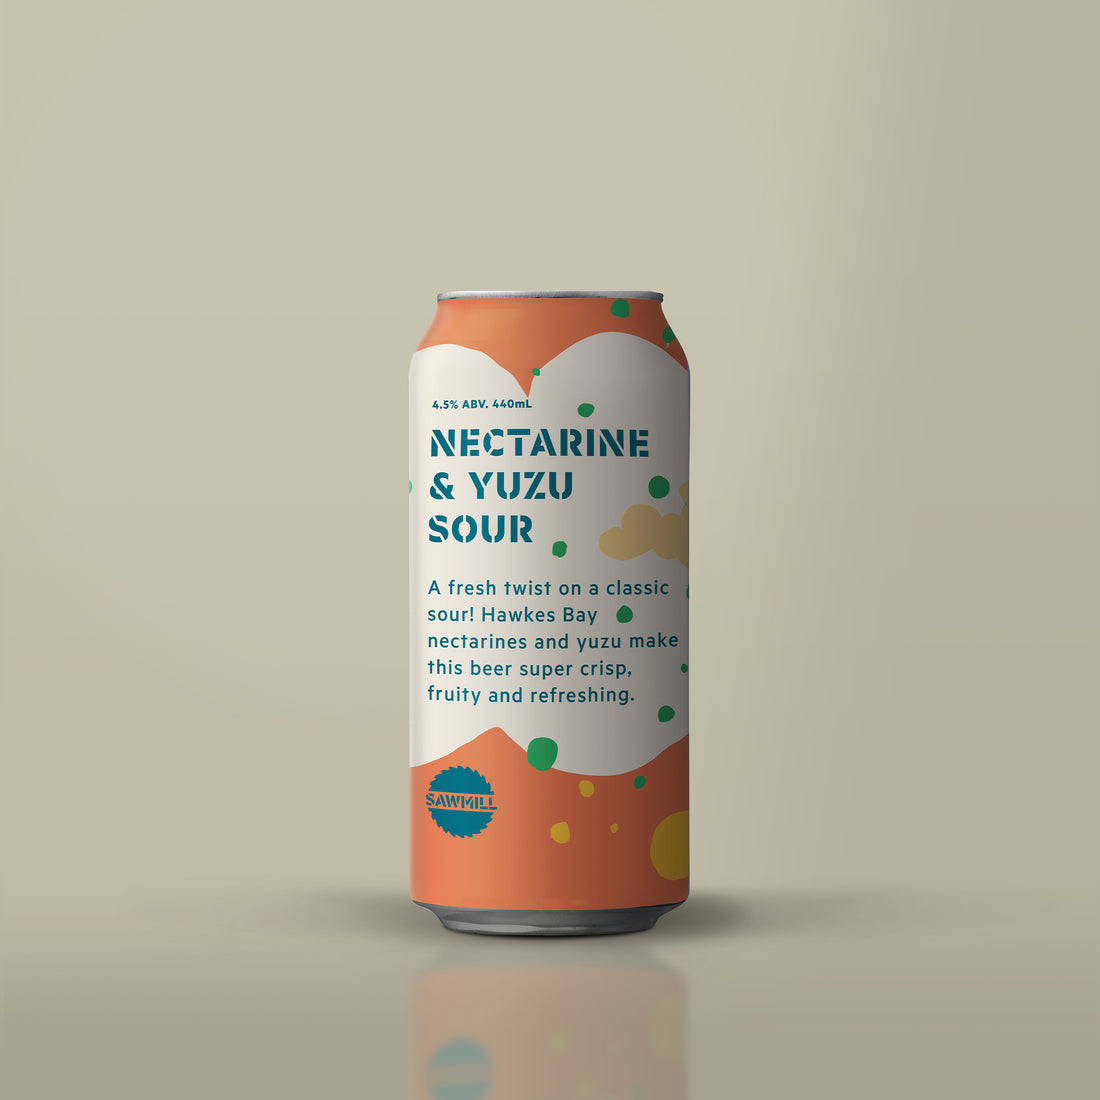 Nectarine & Yuzu Sour